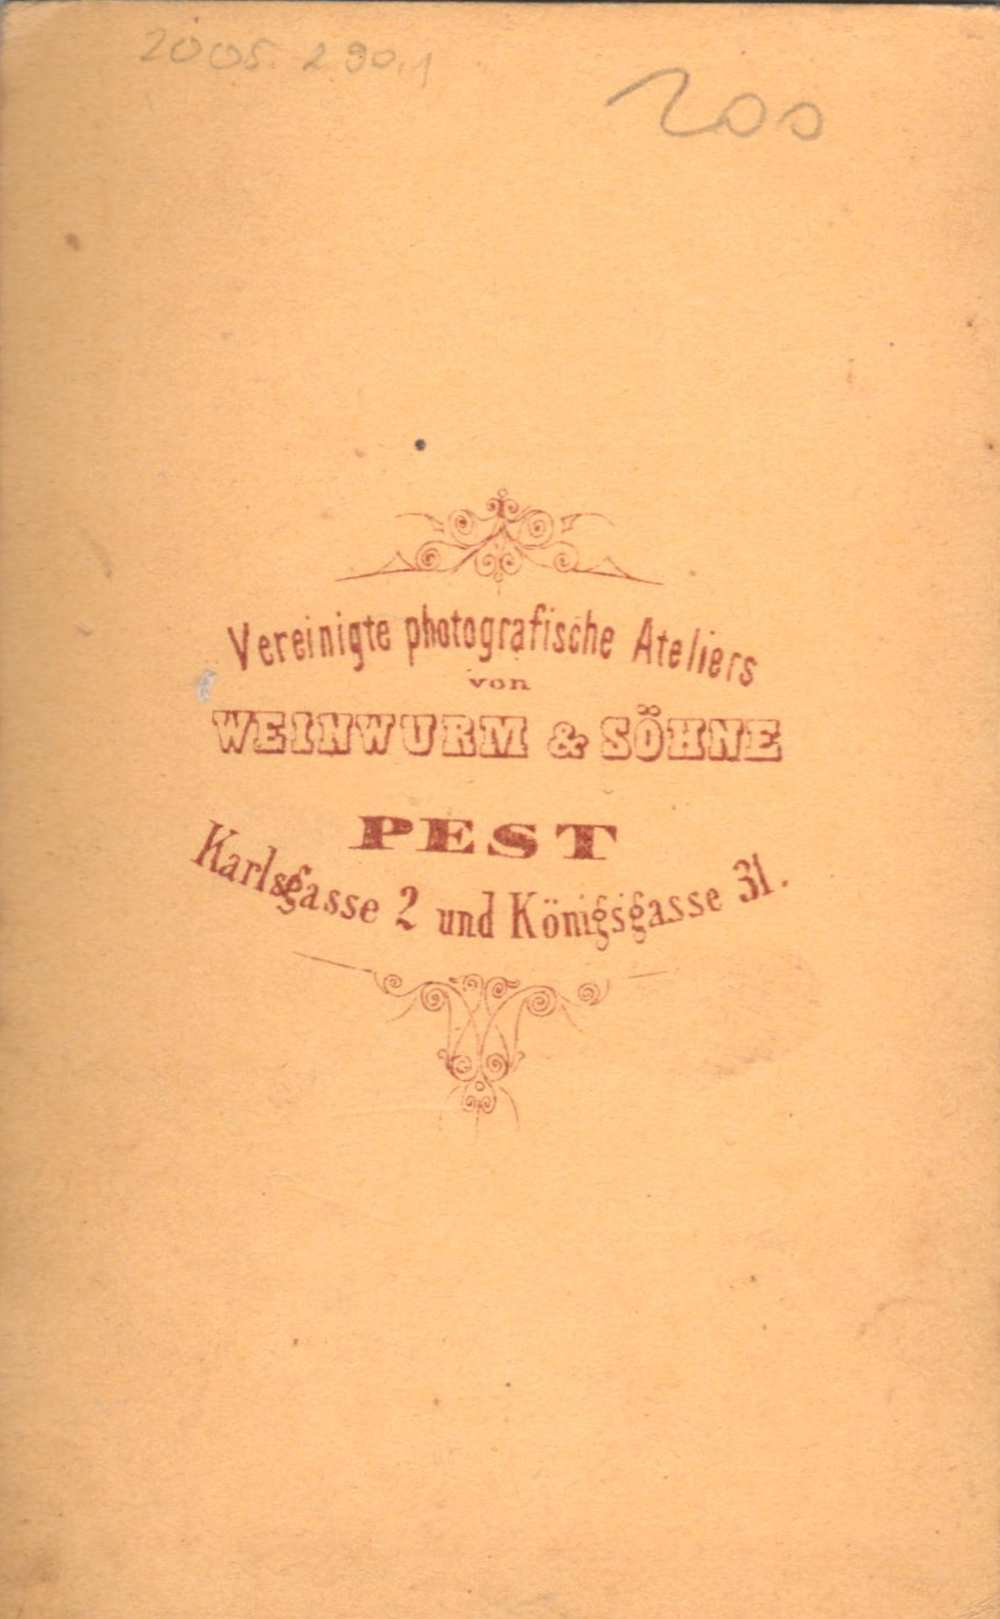 Weinwurm und Söhne: Családi kép. Verso – Magángyűjtemény